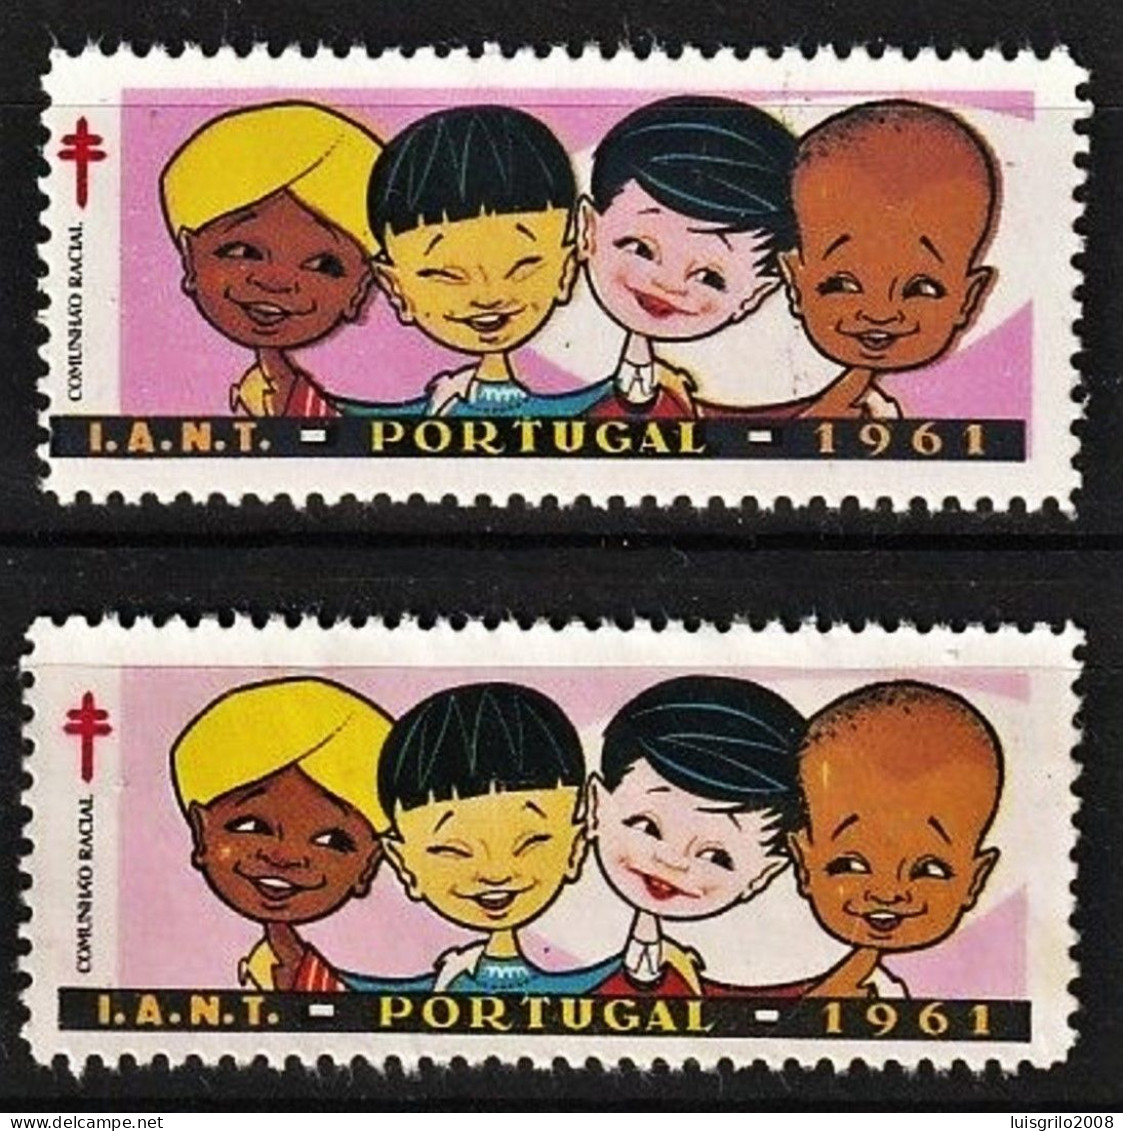 Vignettes/ Vinhetas, Portugal 1961 - Comunhão Racial, I.A.N.T. -||-  Série Complète - MNH - Emisiones Locales